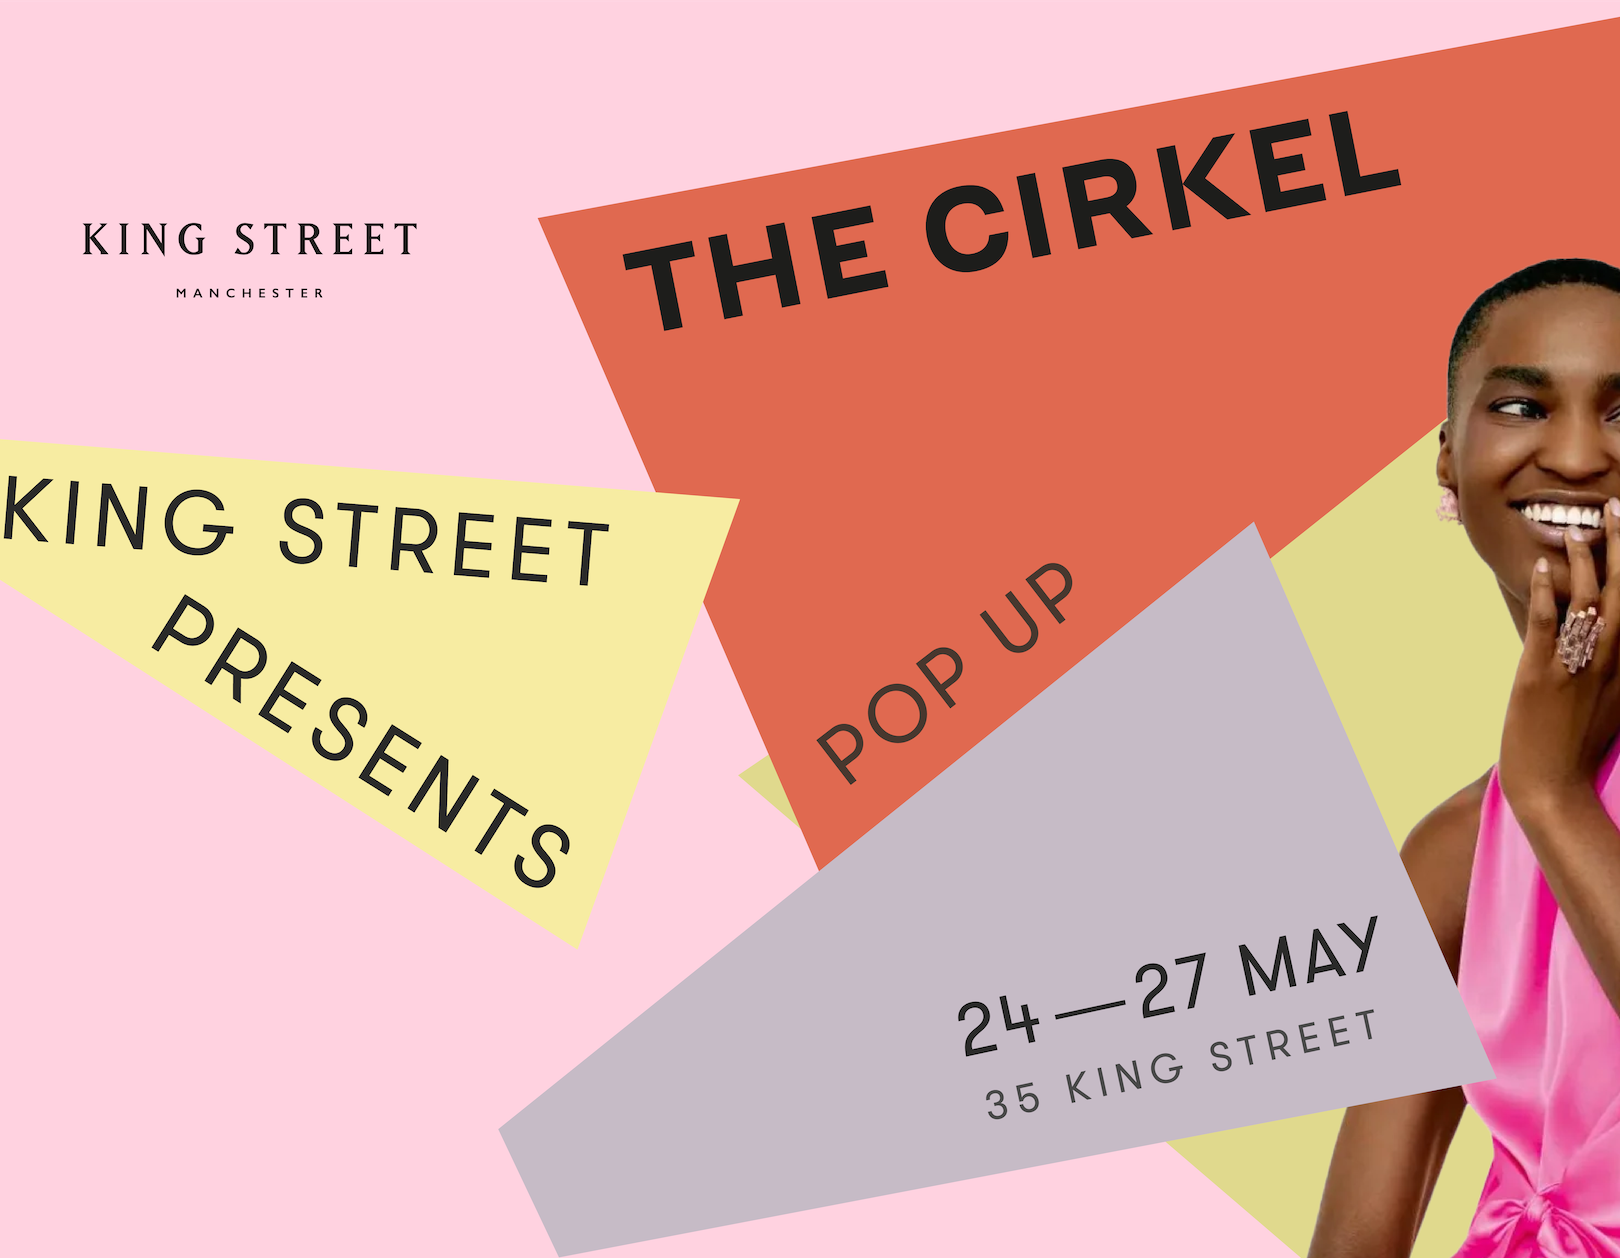 King Street Presents x The Cirkel